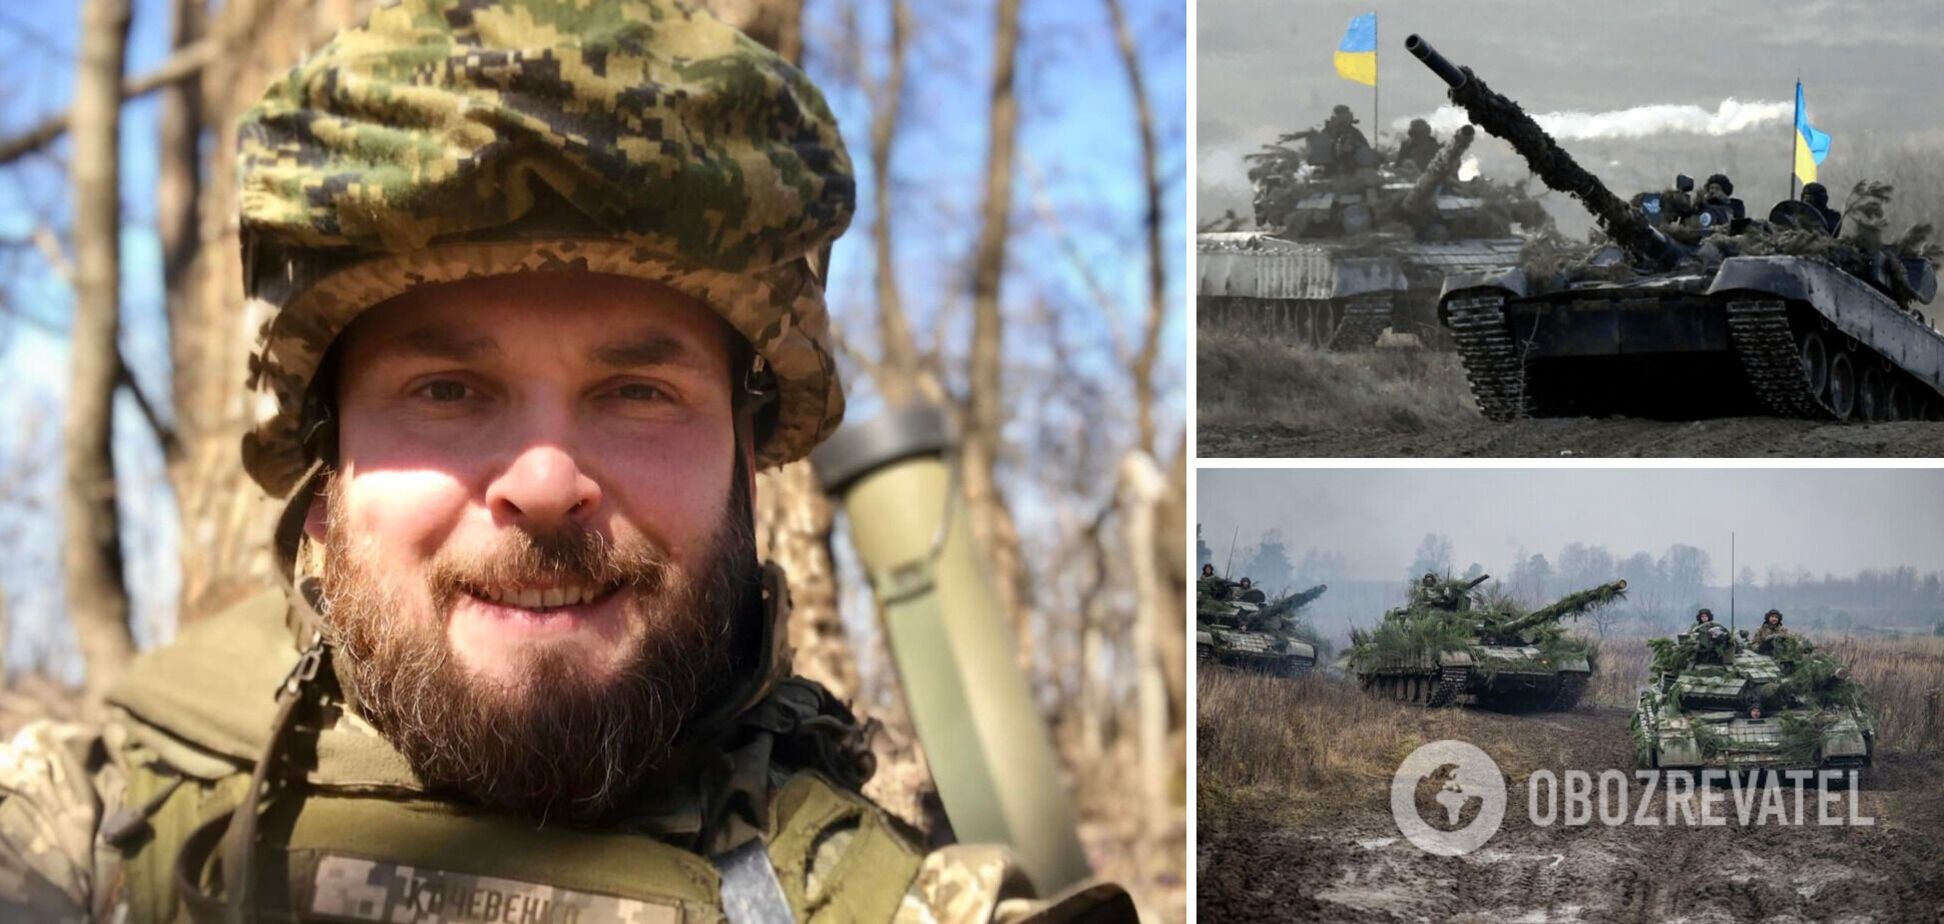 'Є шанс на перелом, ворог видихається': офіцер закликав українських воїнів триматися та вірити у перемогу. Відео